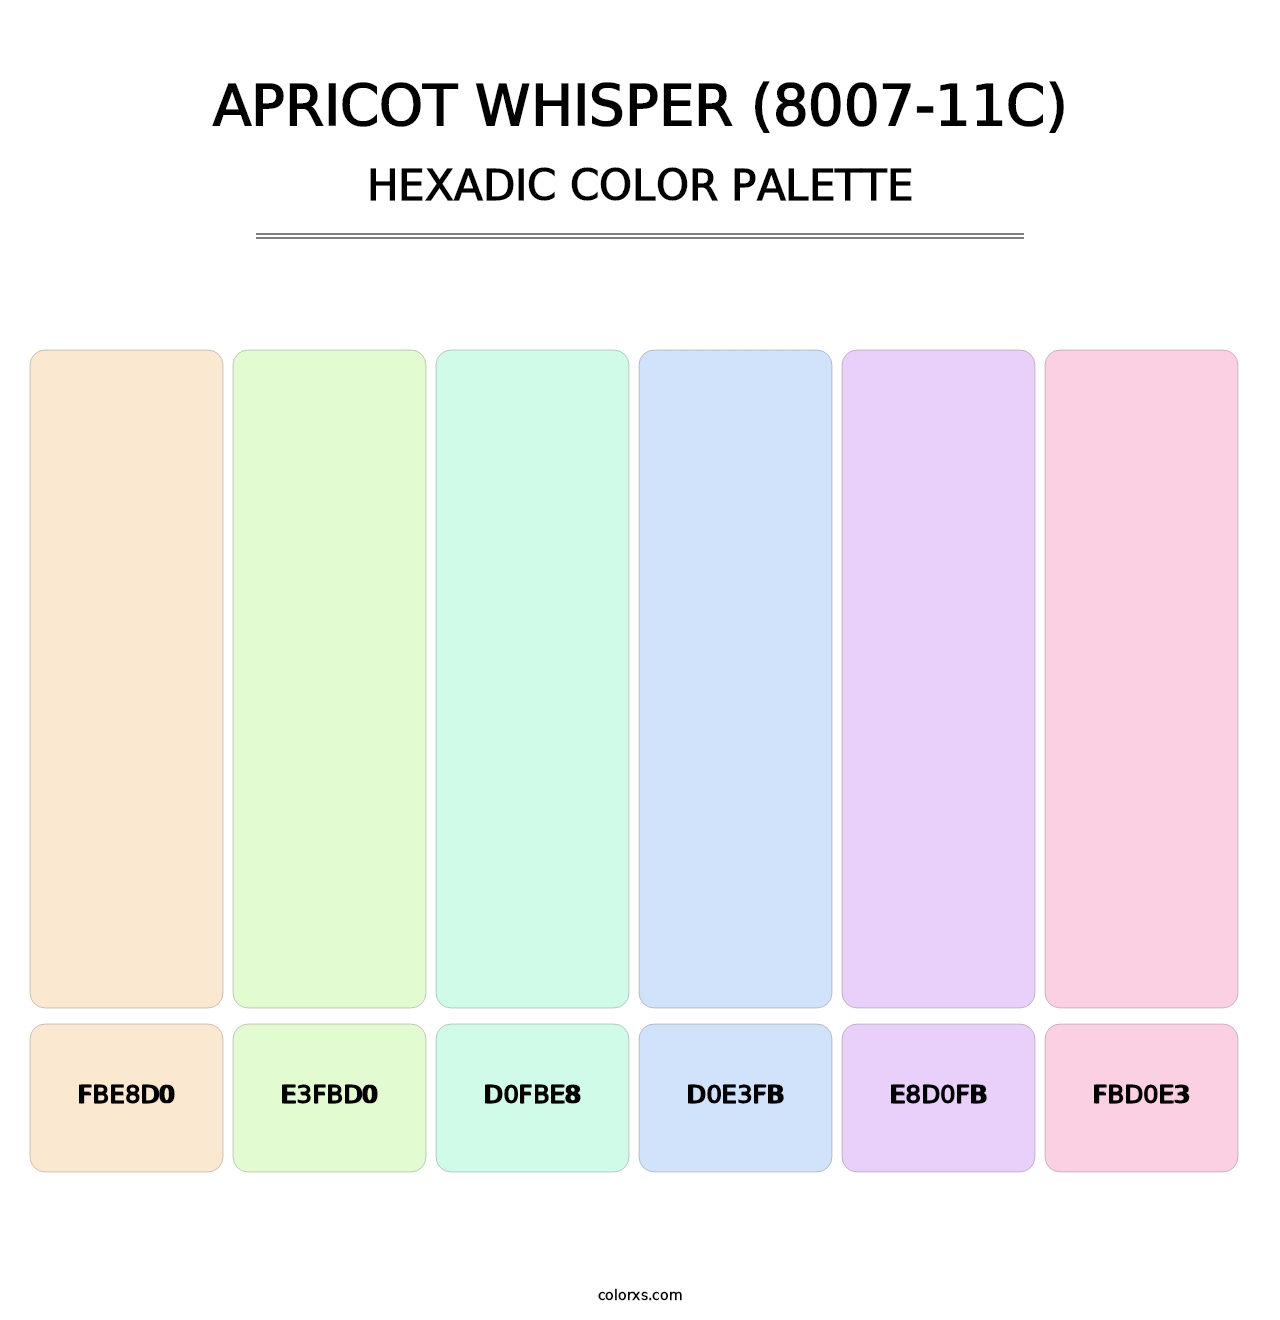 Apricot Whisper (8007-11C) - Hexadic Color Palette